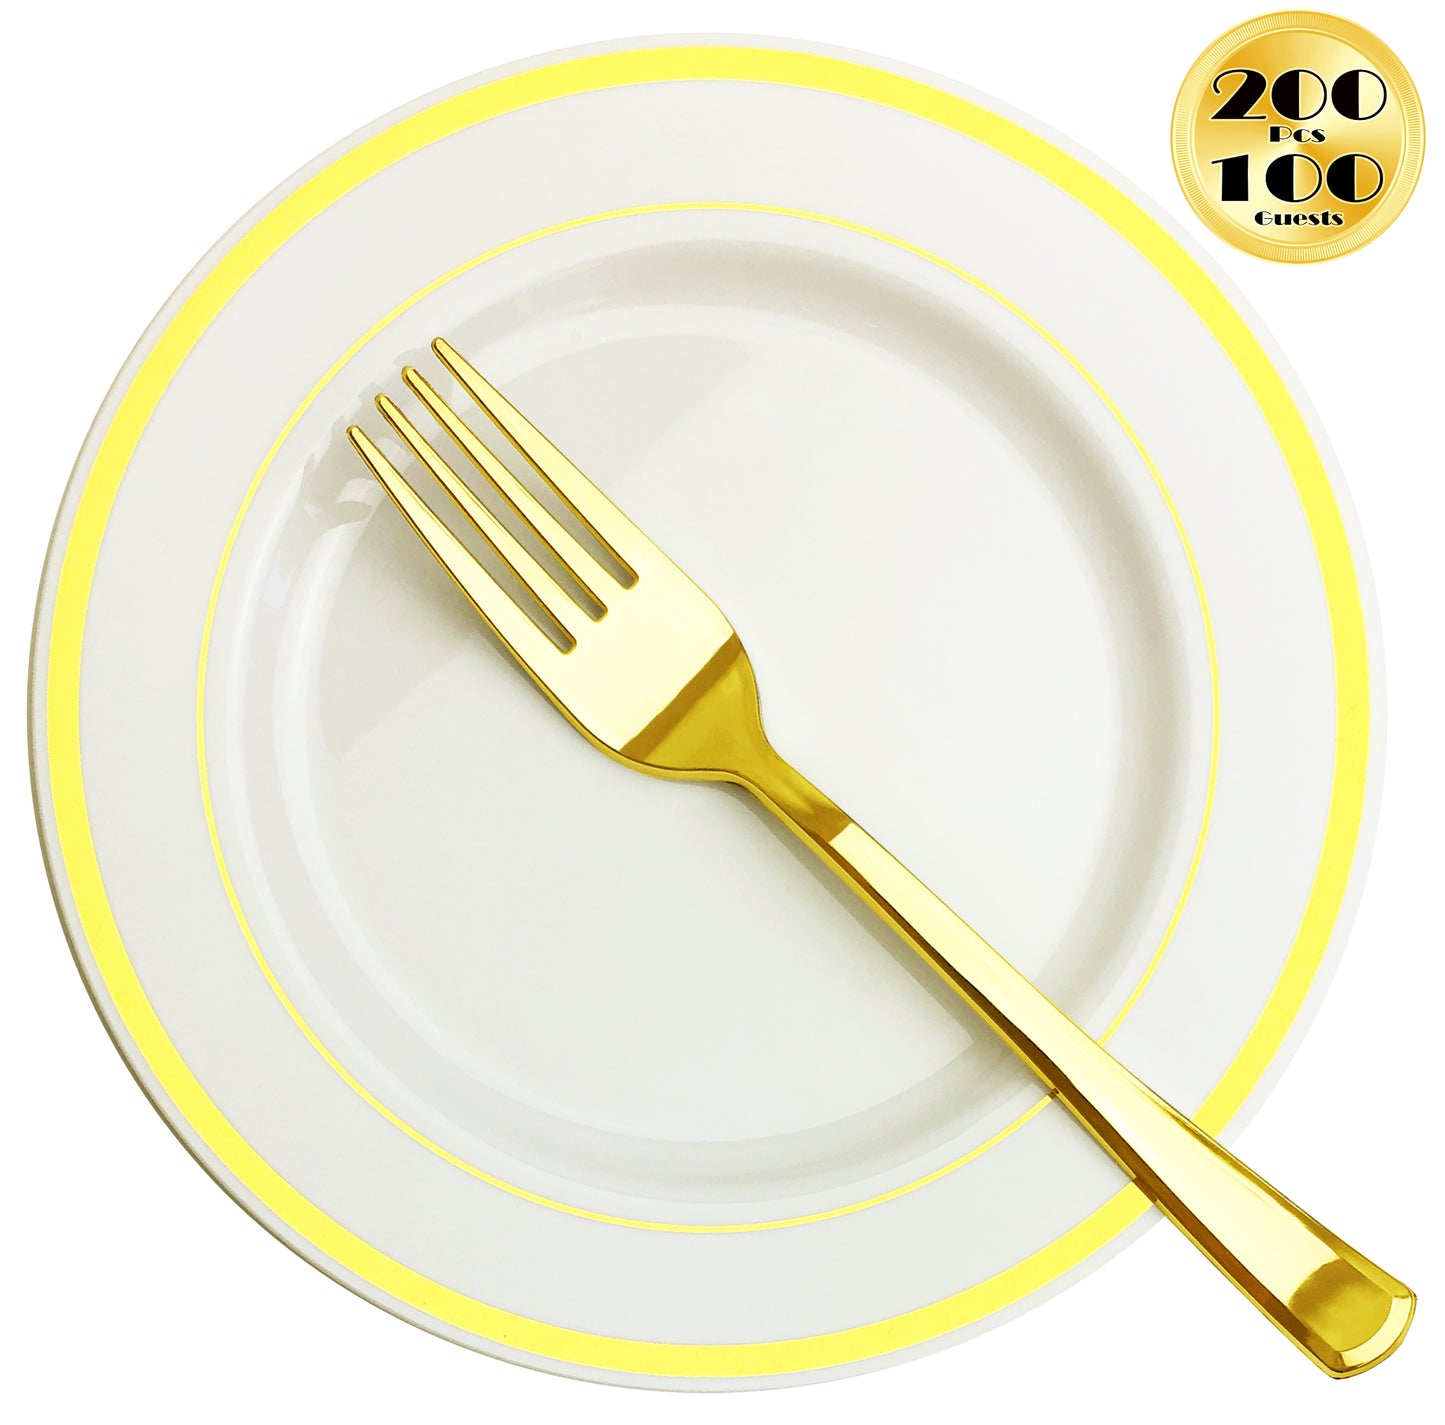 JL Prime 200 Pack 100 Gold 7.35 Inch Small Plastic Plates & 100 Forks Set, Salad/Dessert/Cake Plates and Forks Set